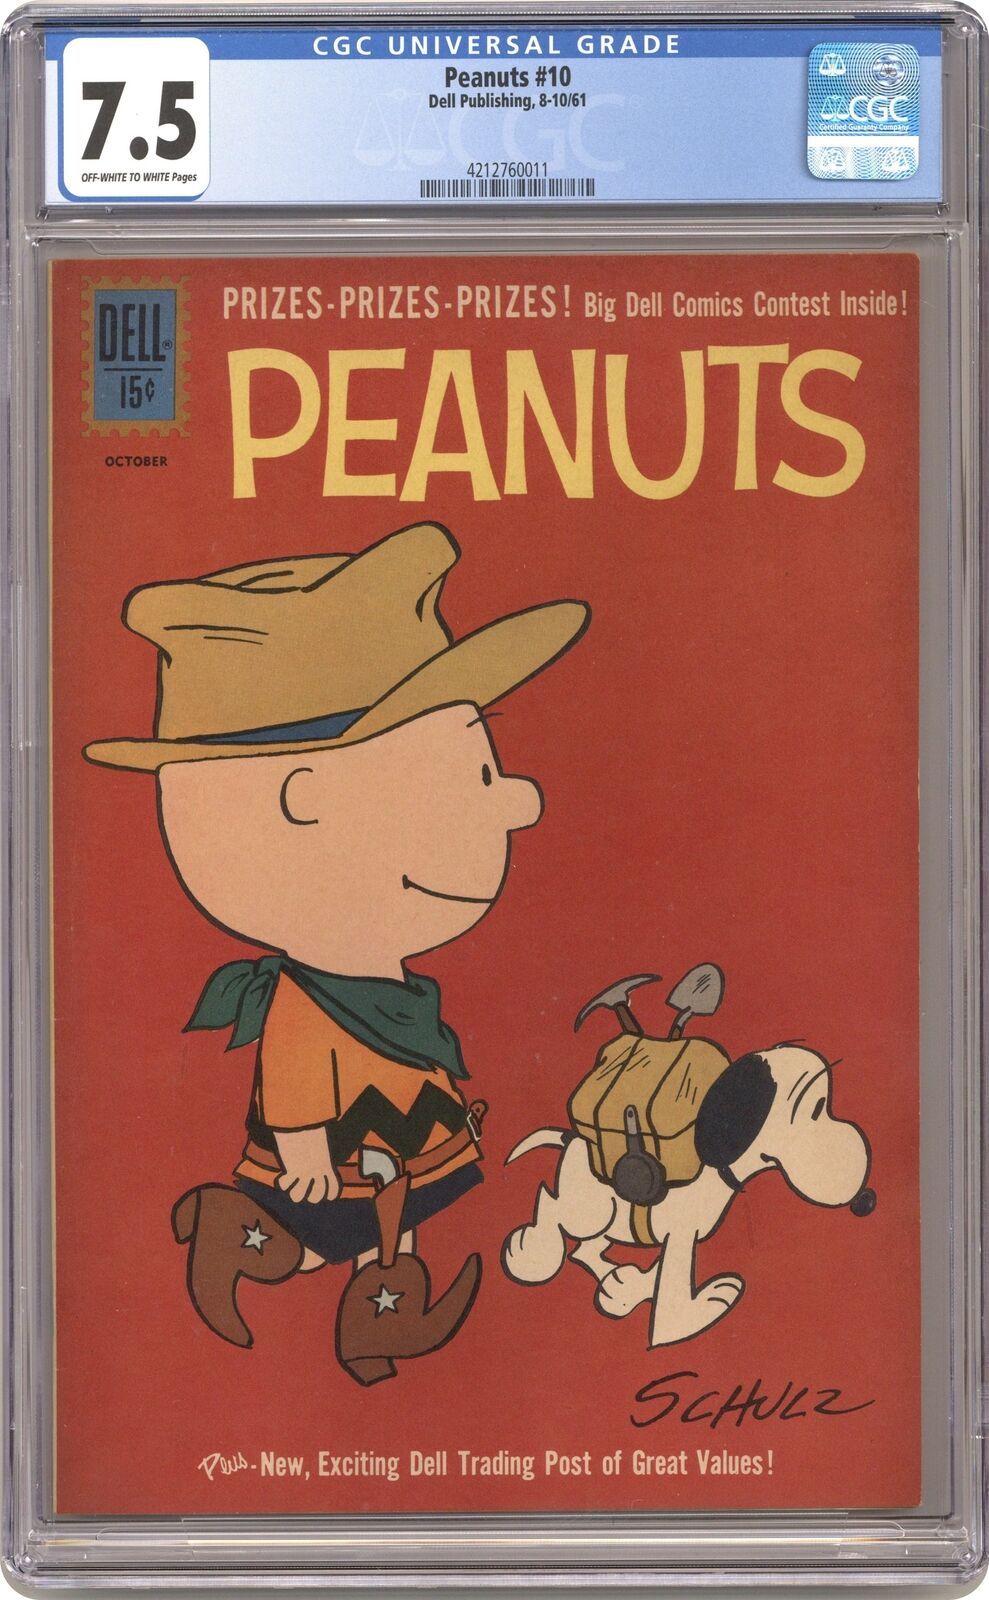 Peanuts #10 CGC 7.5 1961 4212760011